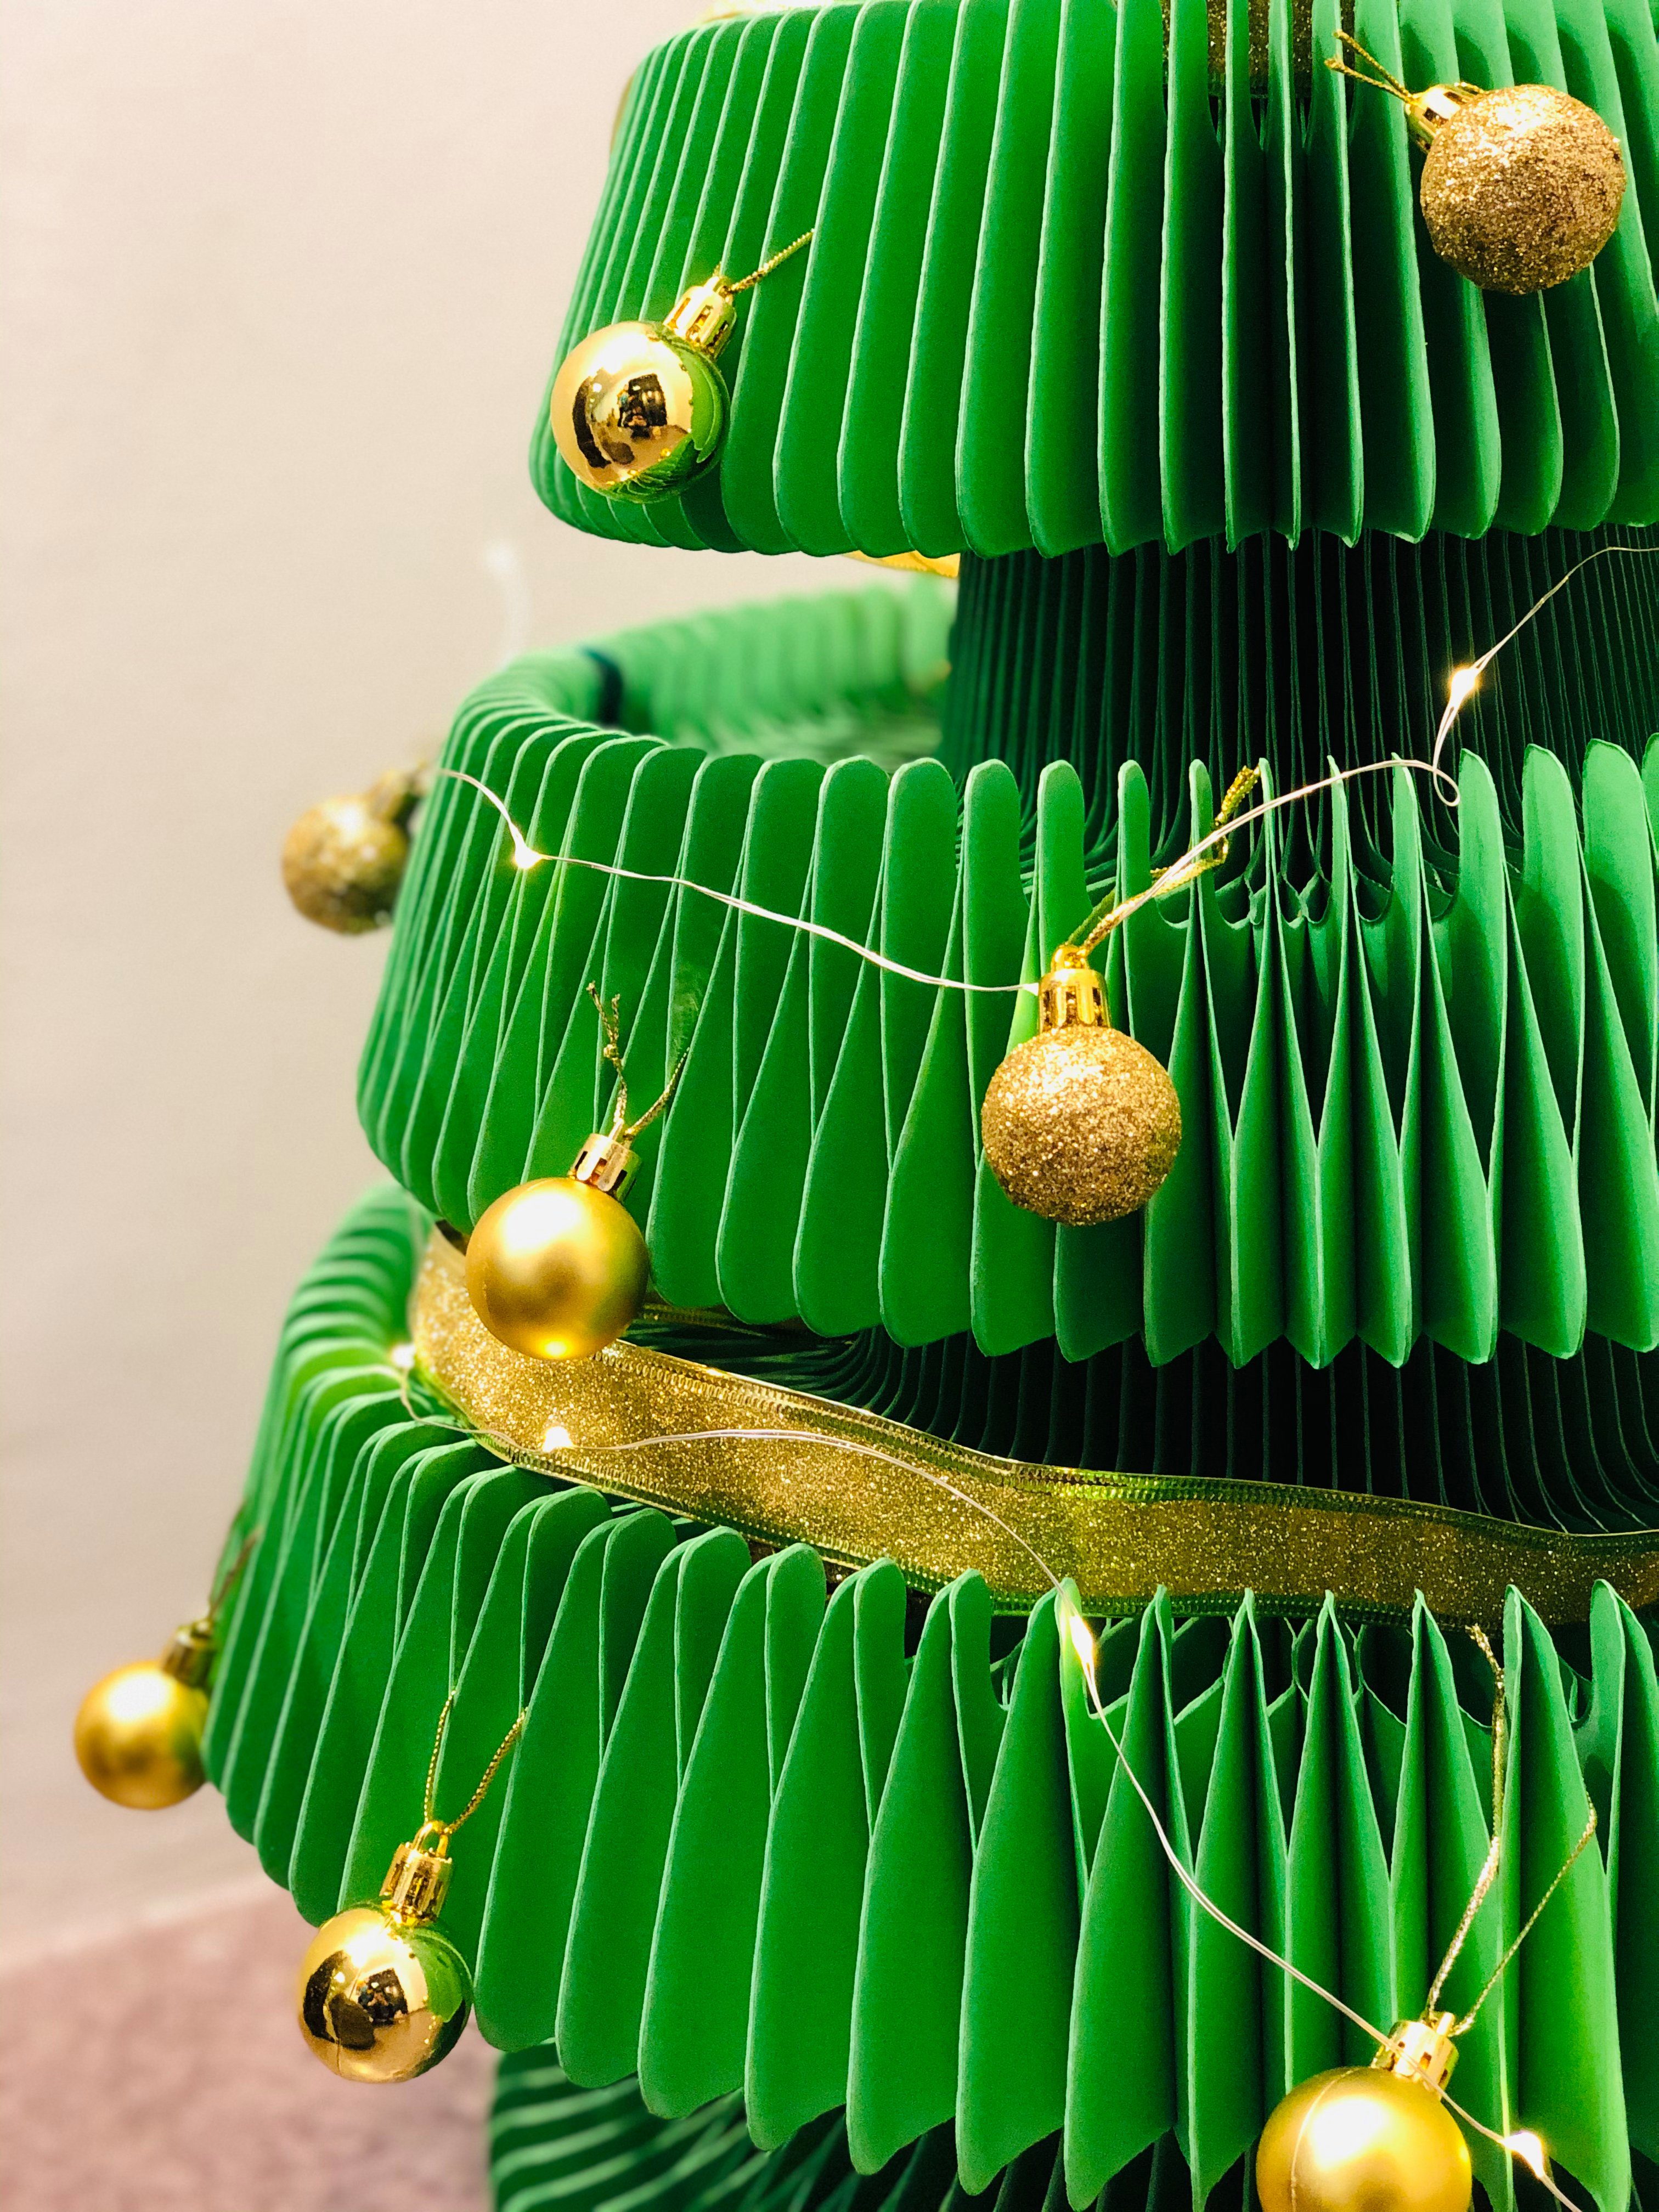 ih Papp Waben Struktur Design, Pappe Künstlicher paper Tannenbaum, Baum, verstauen Tanne, faltbar Rot & leicht Weihnachtsbaum zu